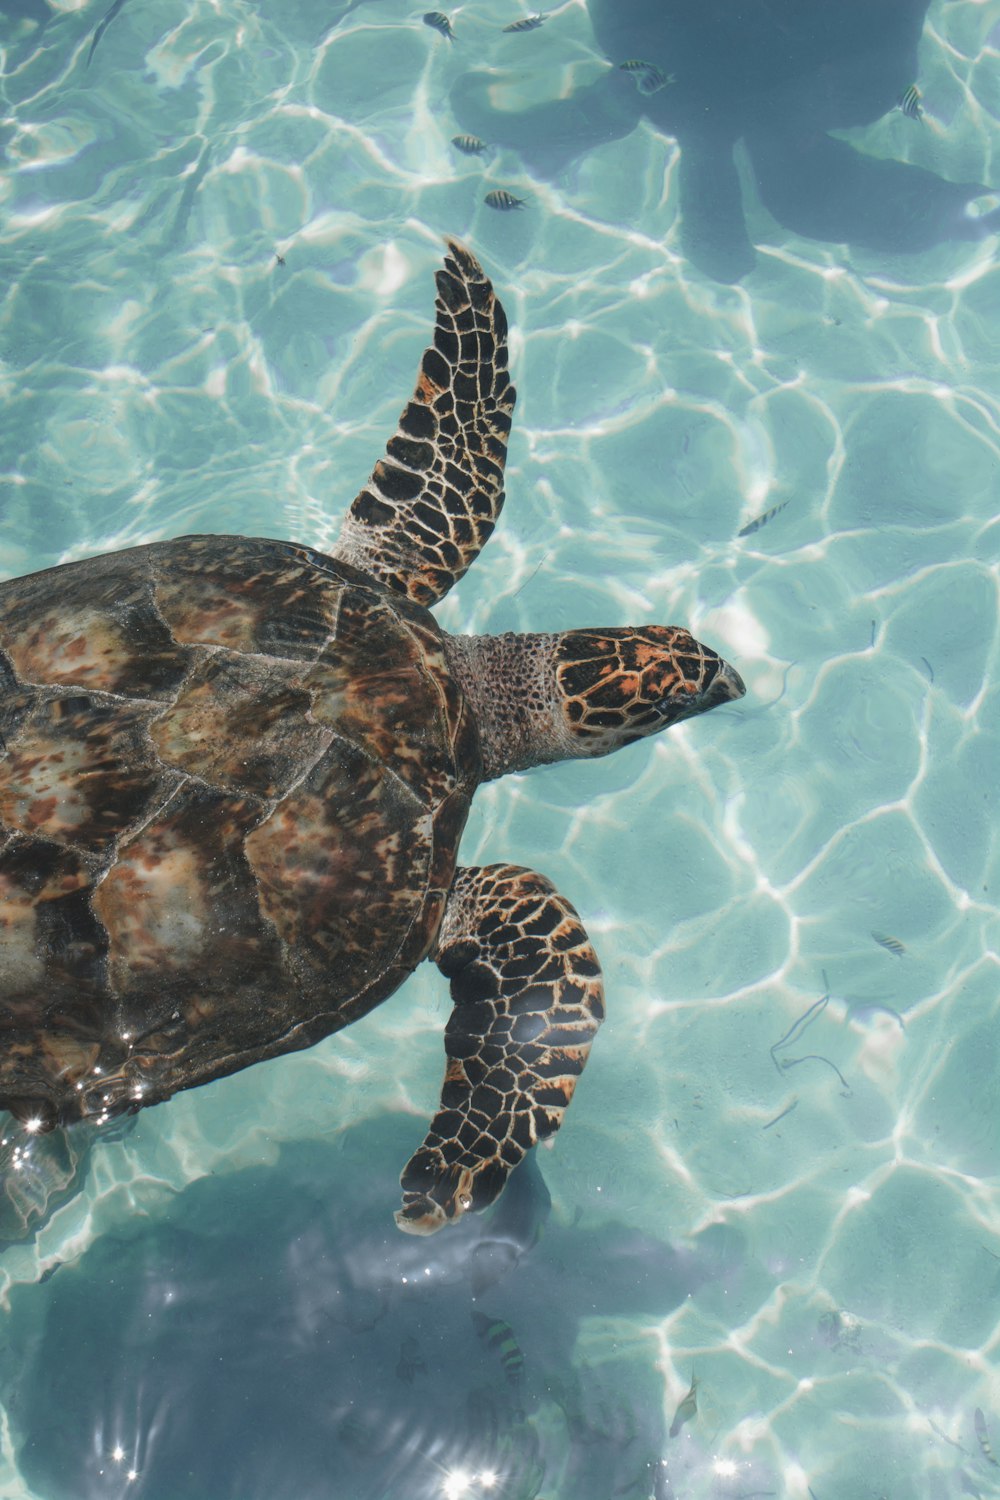 tartaruga marrom e cinza no corpo da água